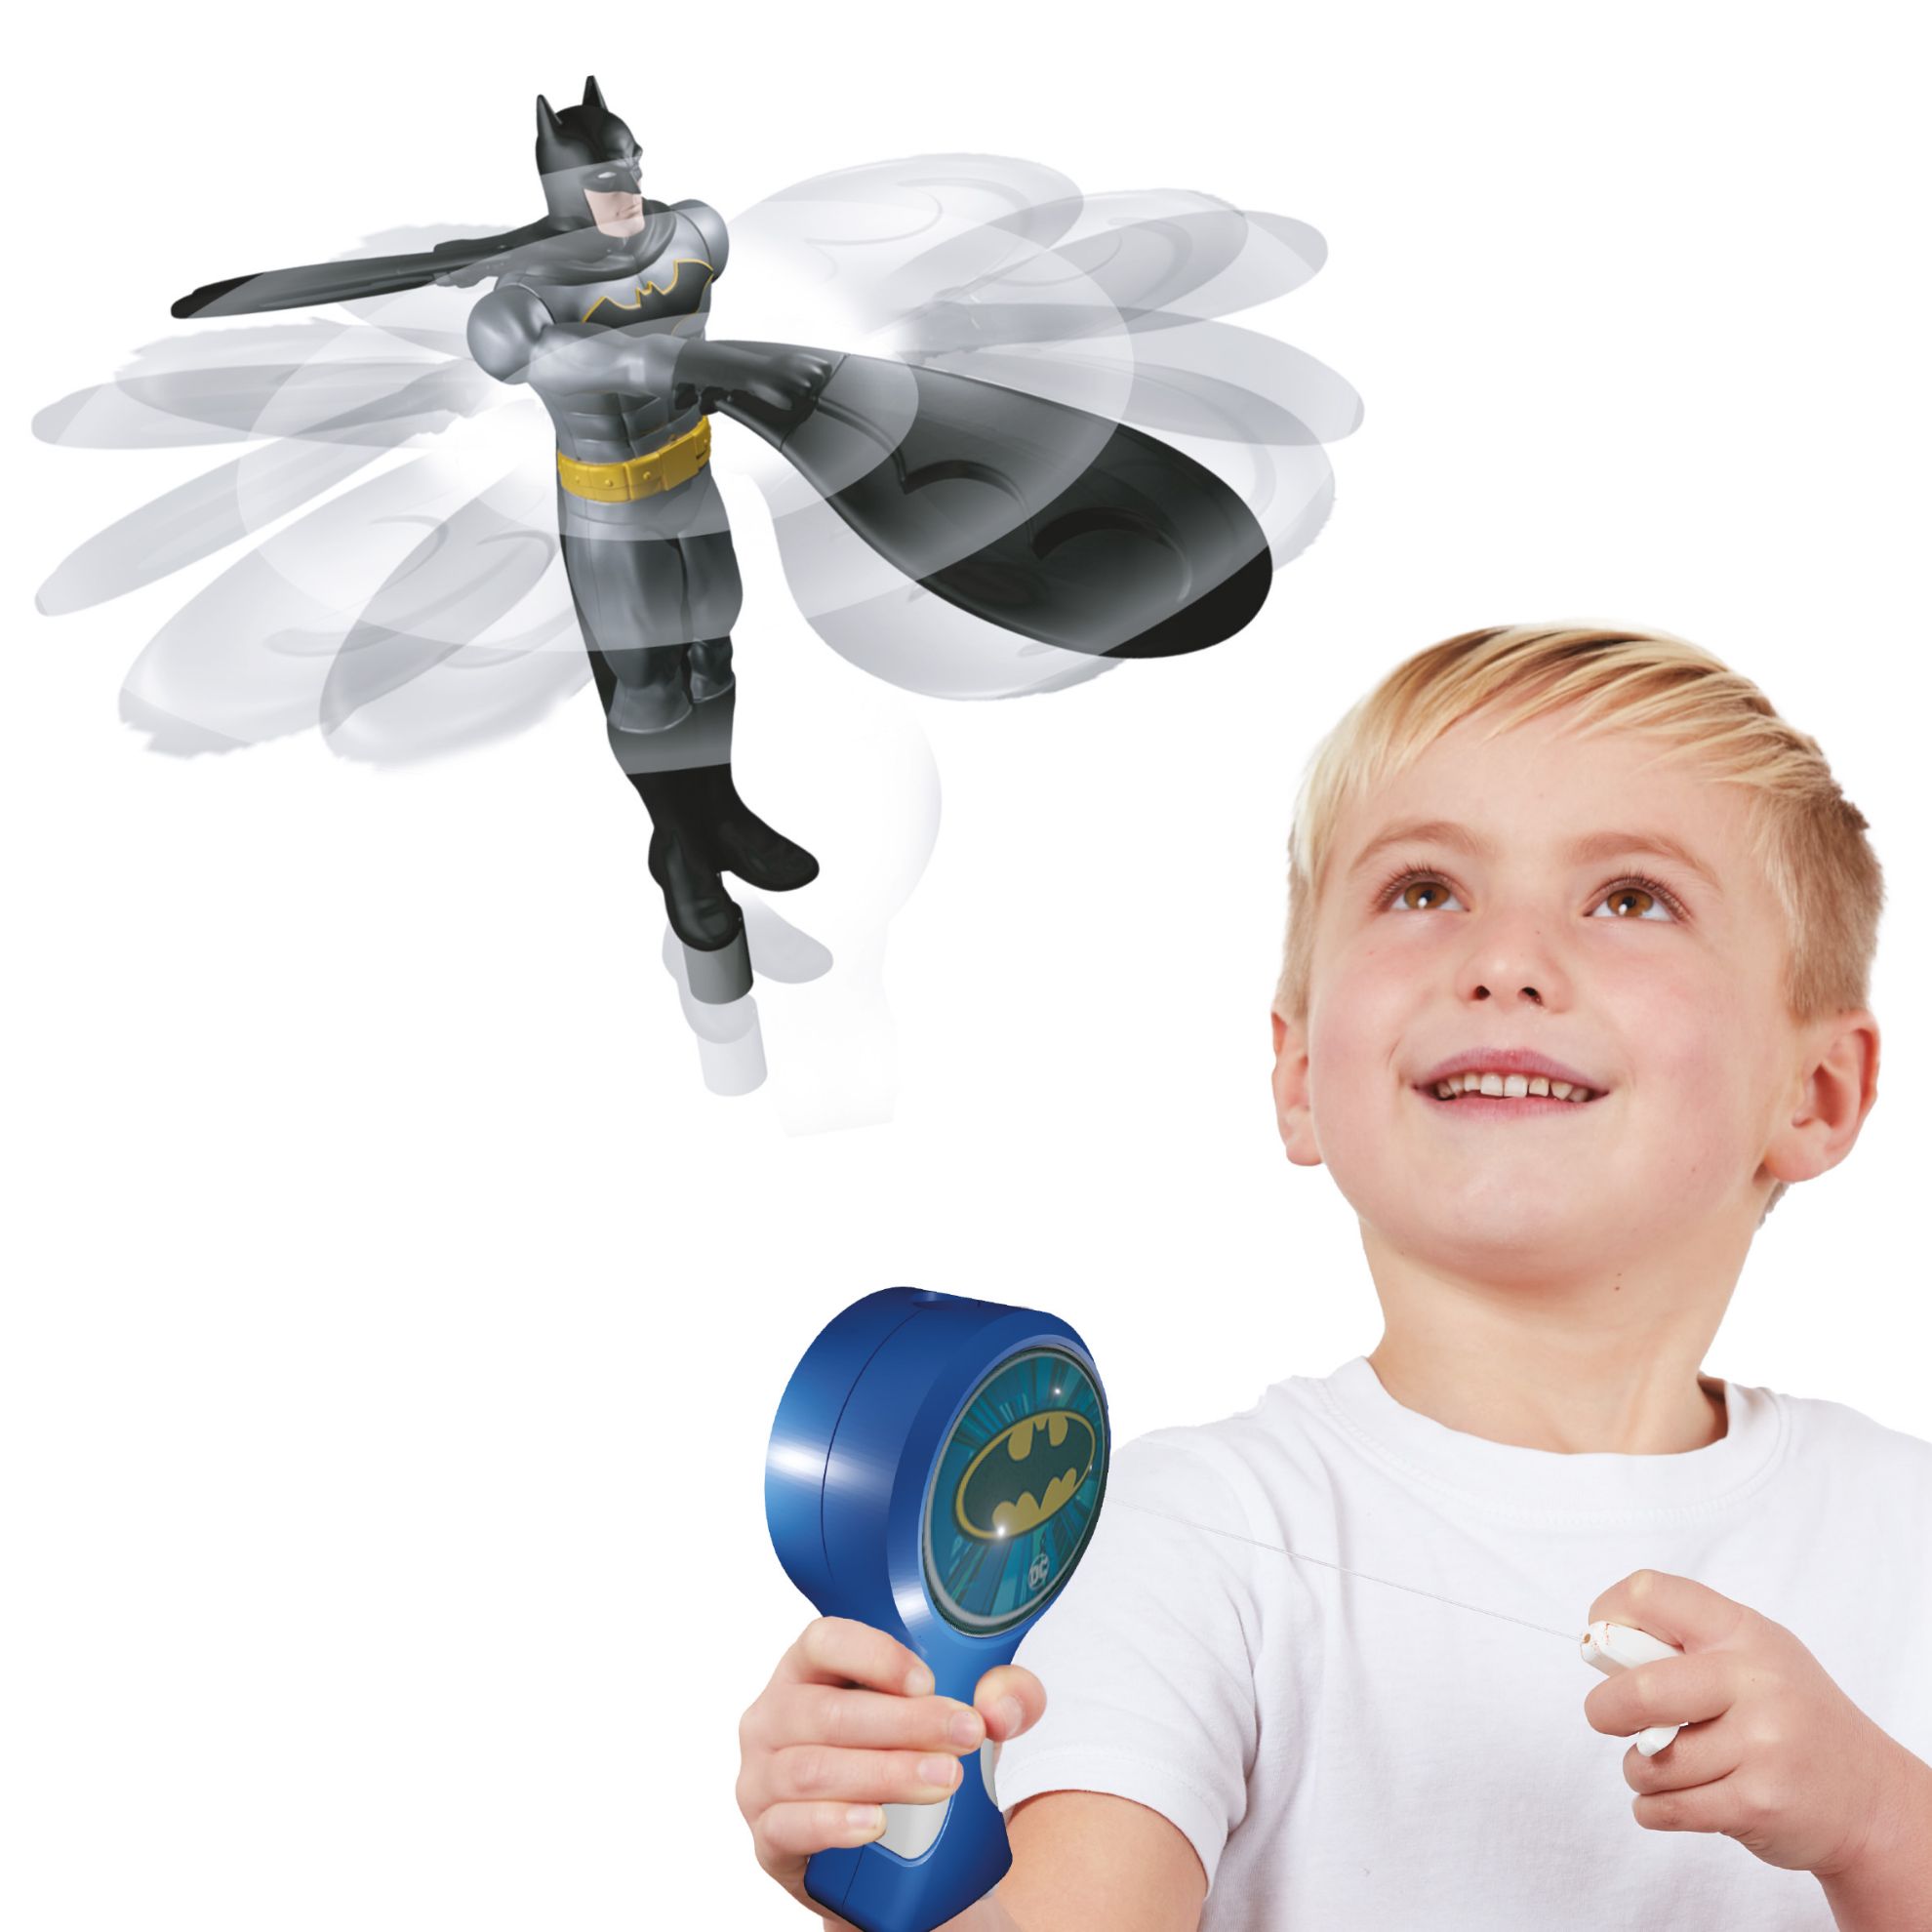 Flying Heroes - Batman